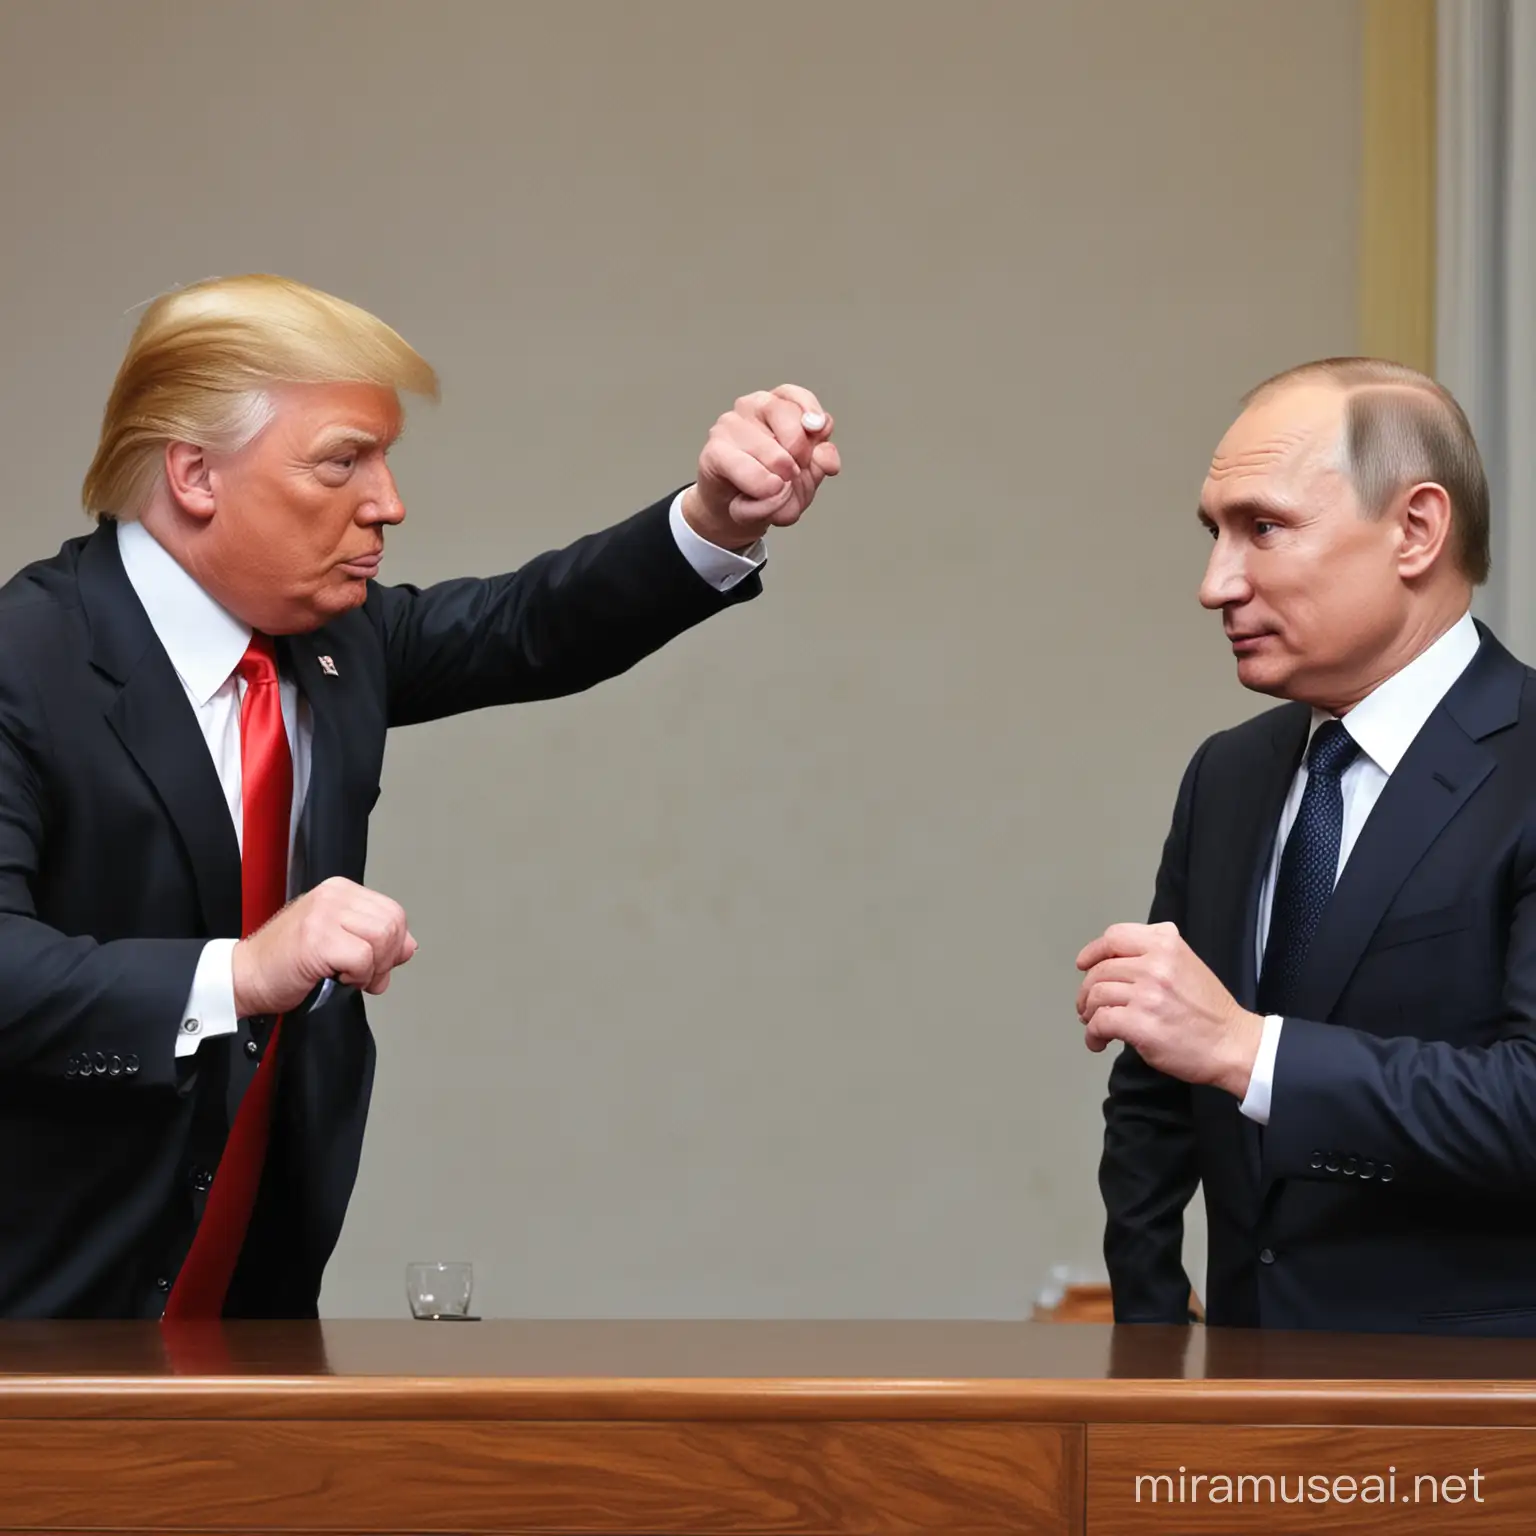 Putin puppeteering trump.

